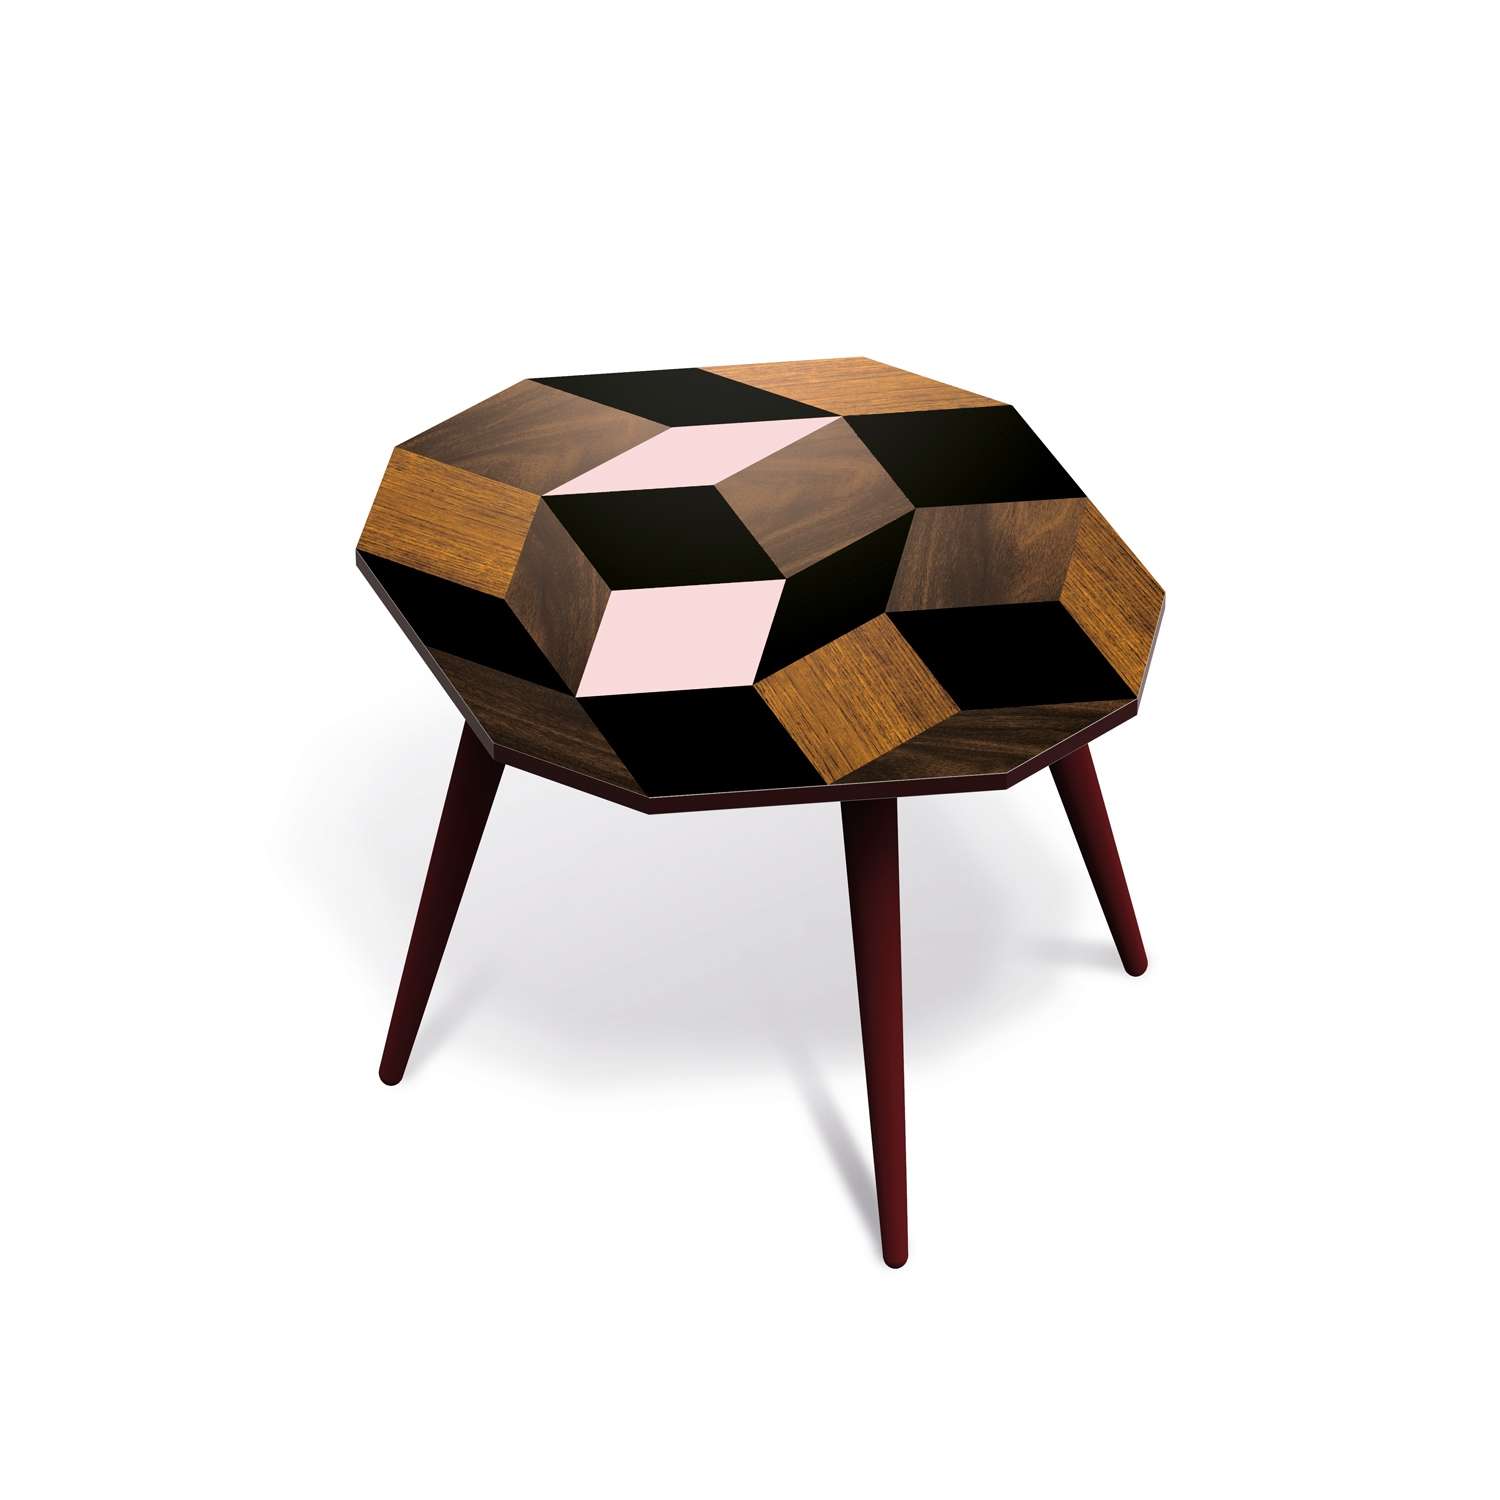 Table basse Spring Wood Medium, motif géométrique, design IchetKar édition Bazartherapy